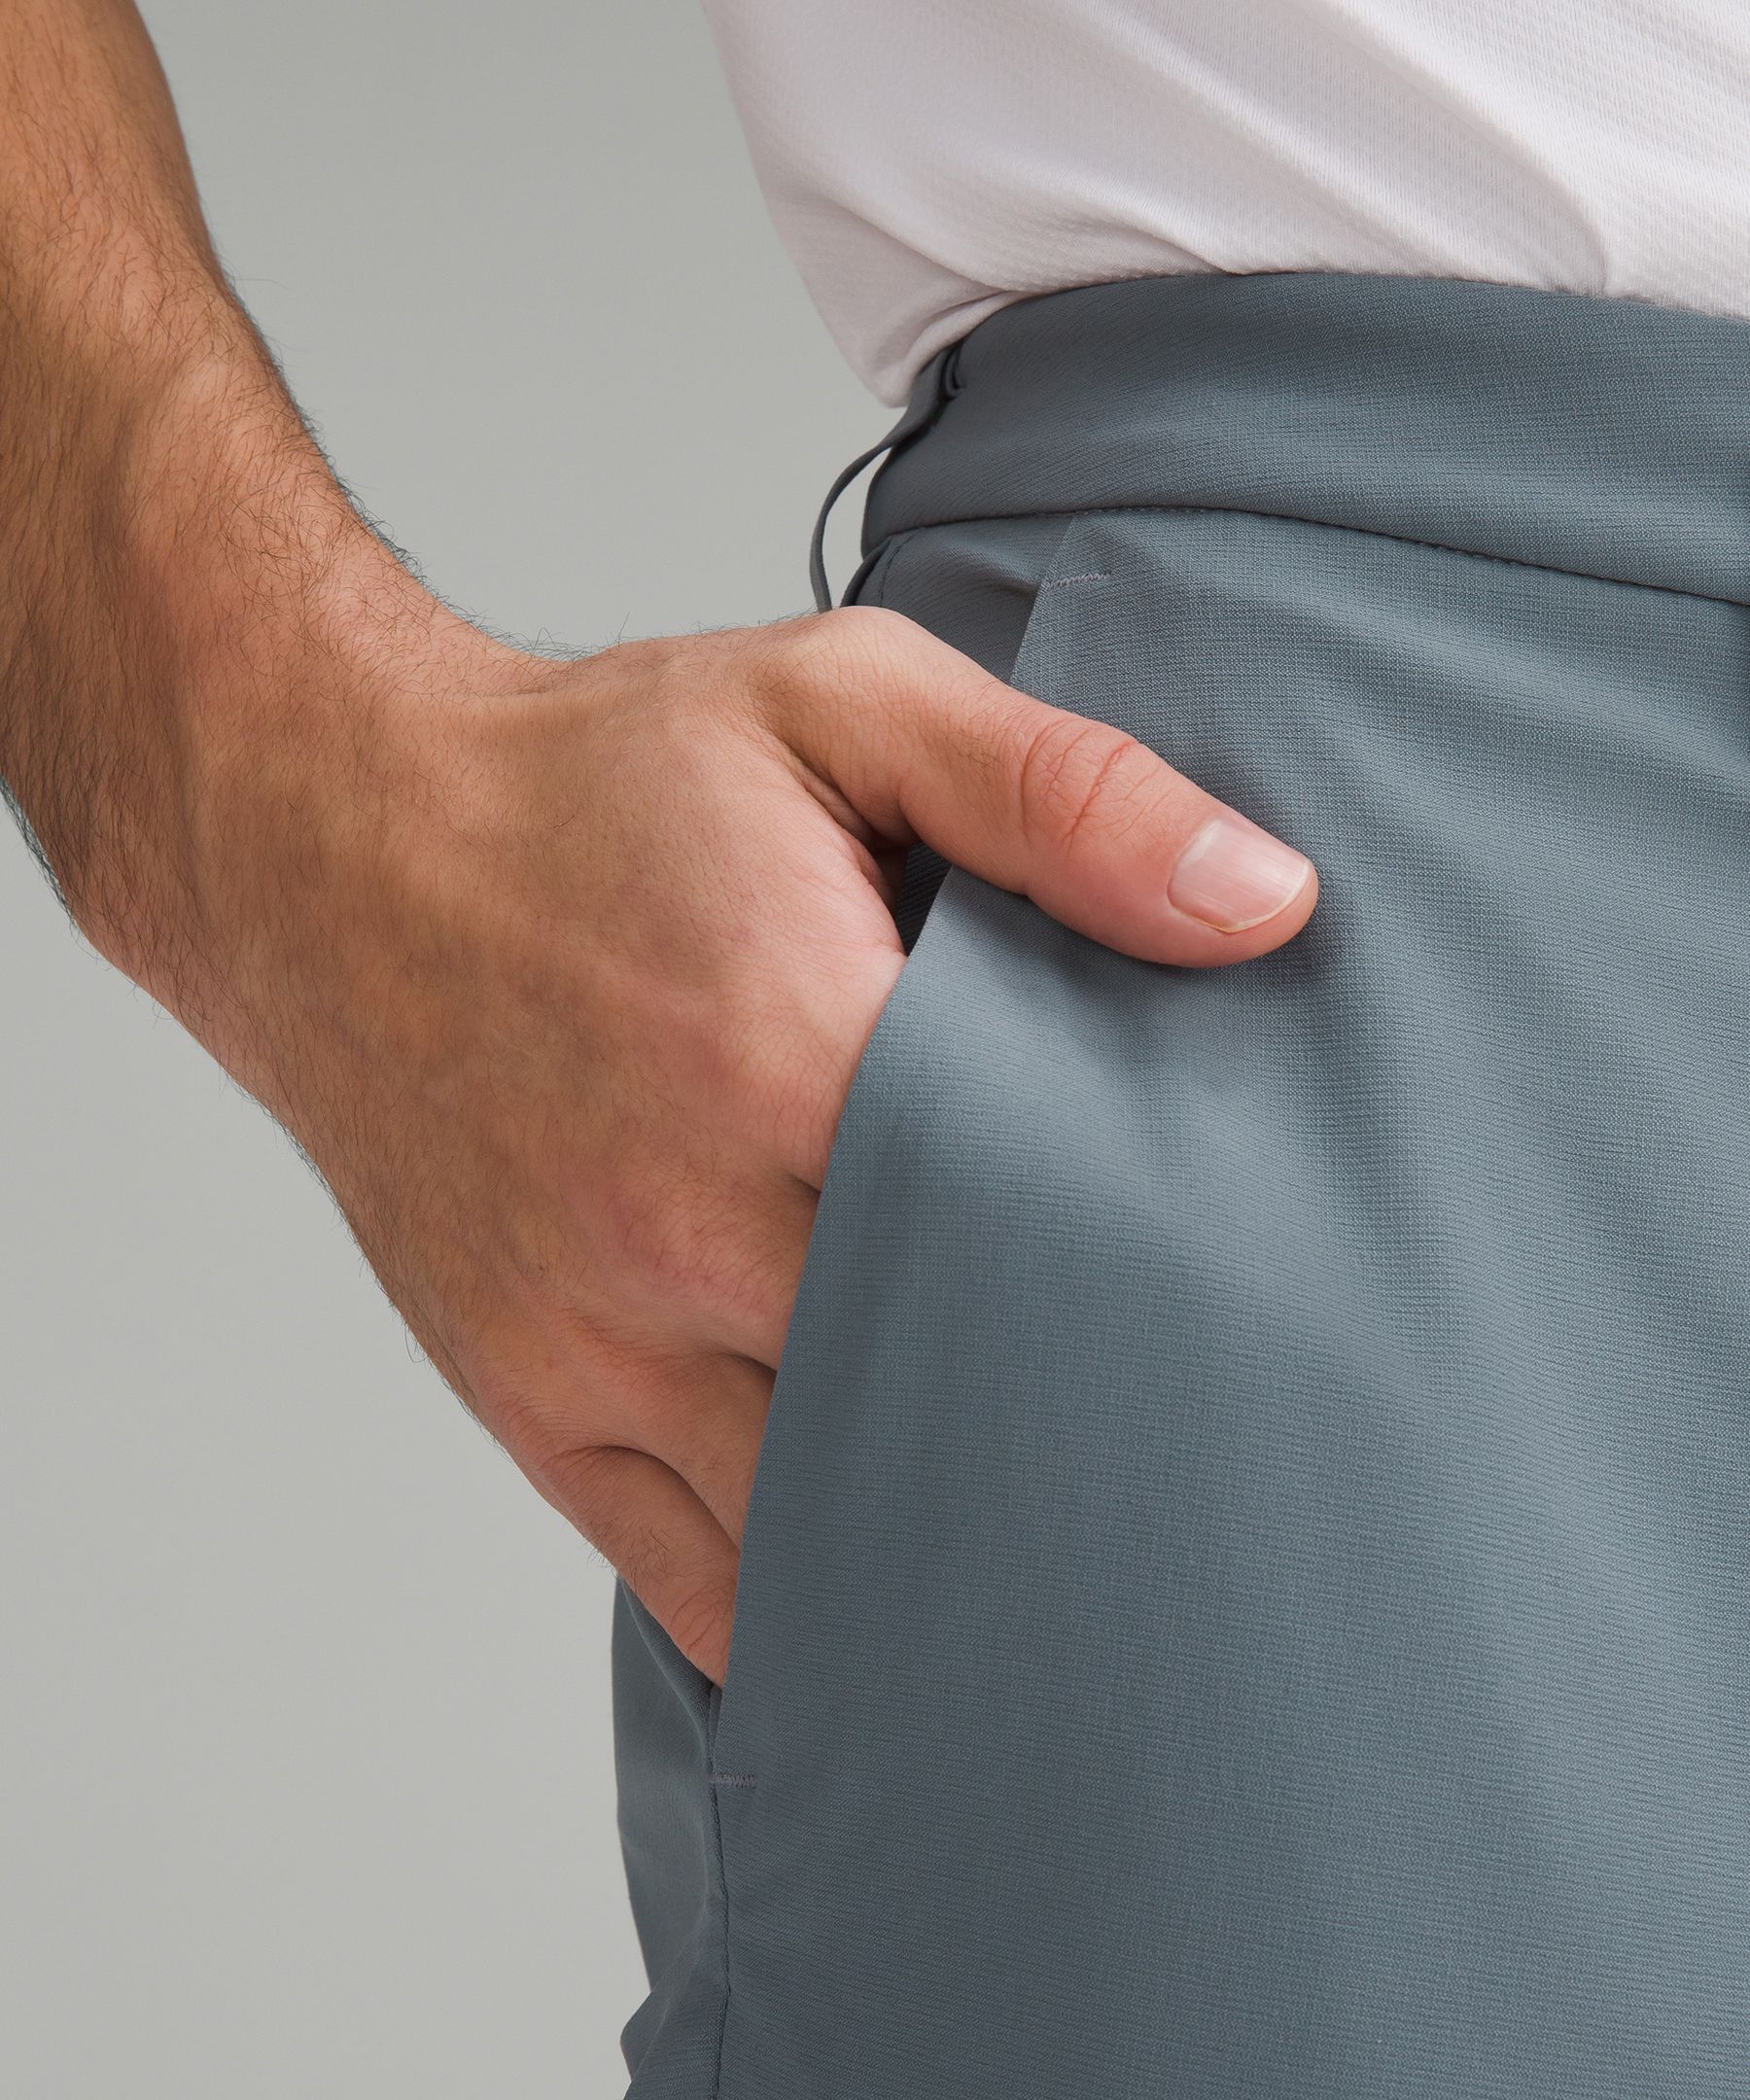 ABC Slim-Fit Golf Trouser 34"L | Men's Trousers